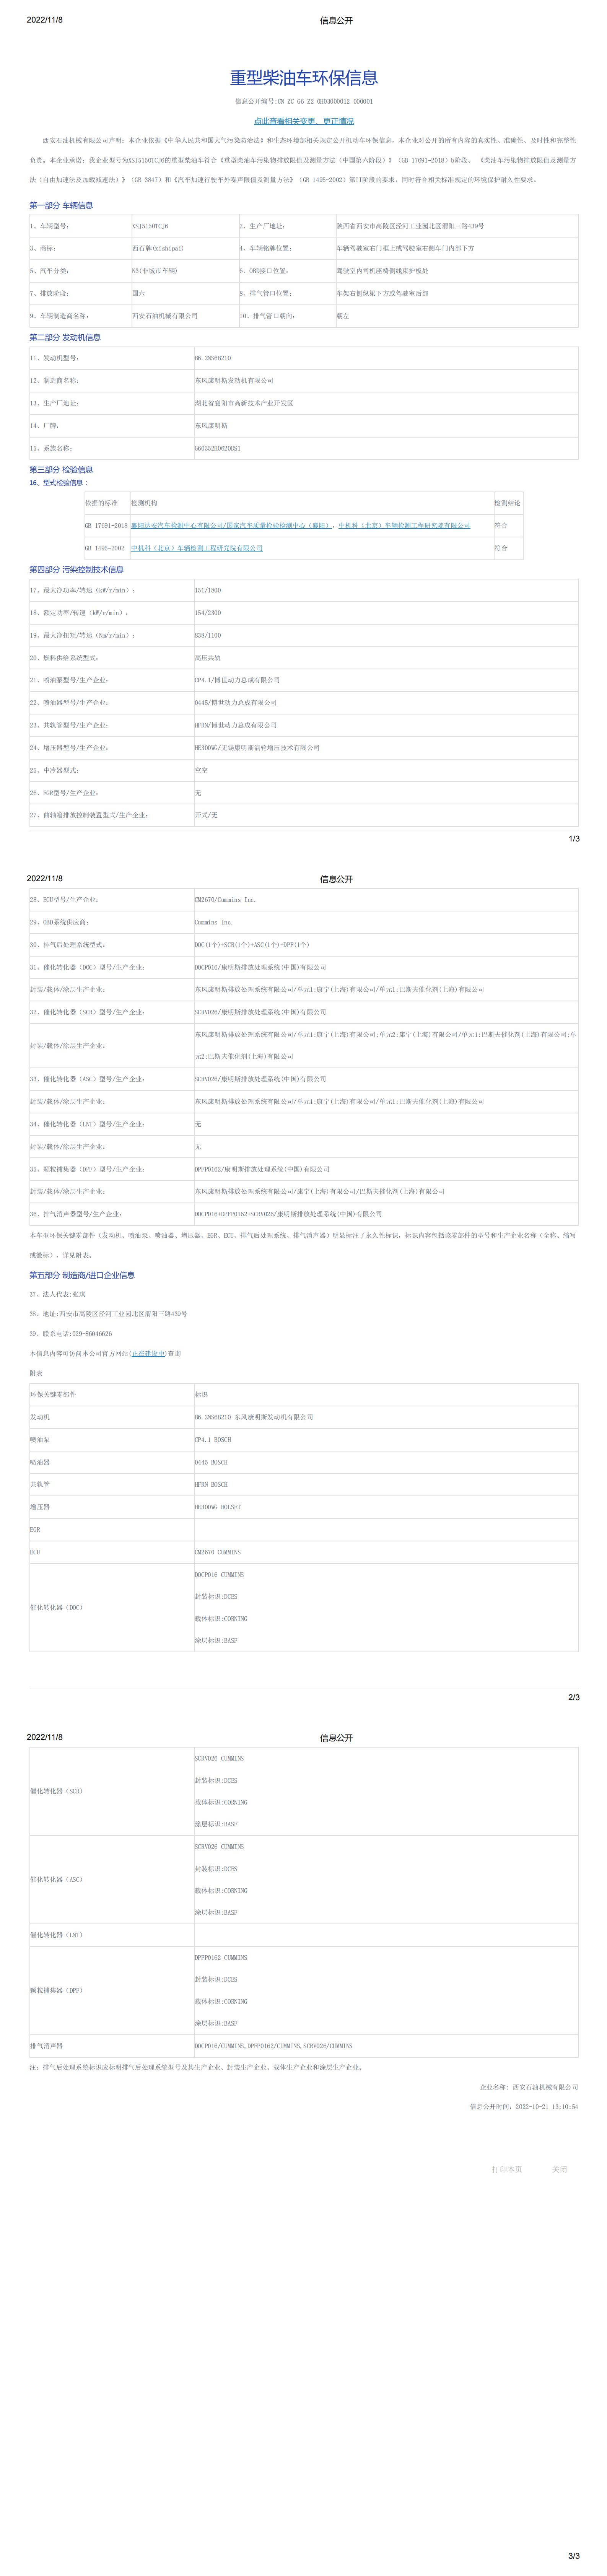 XSJ5150TCJ環保信息公開_00.jpg